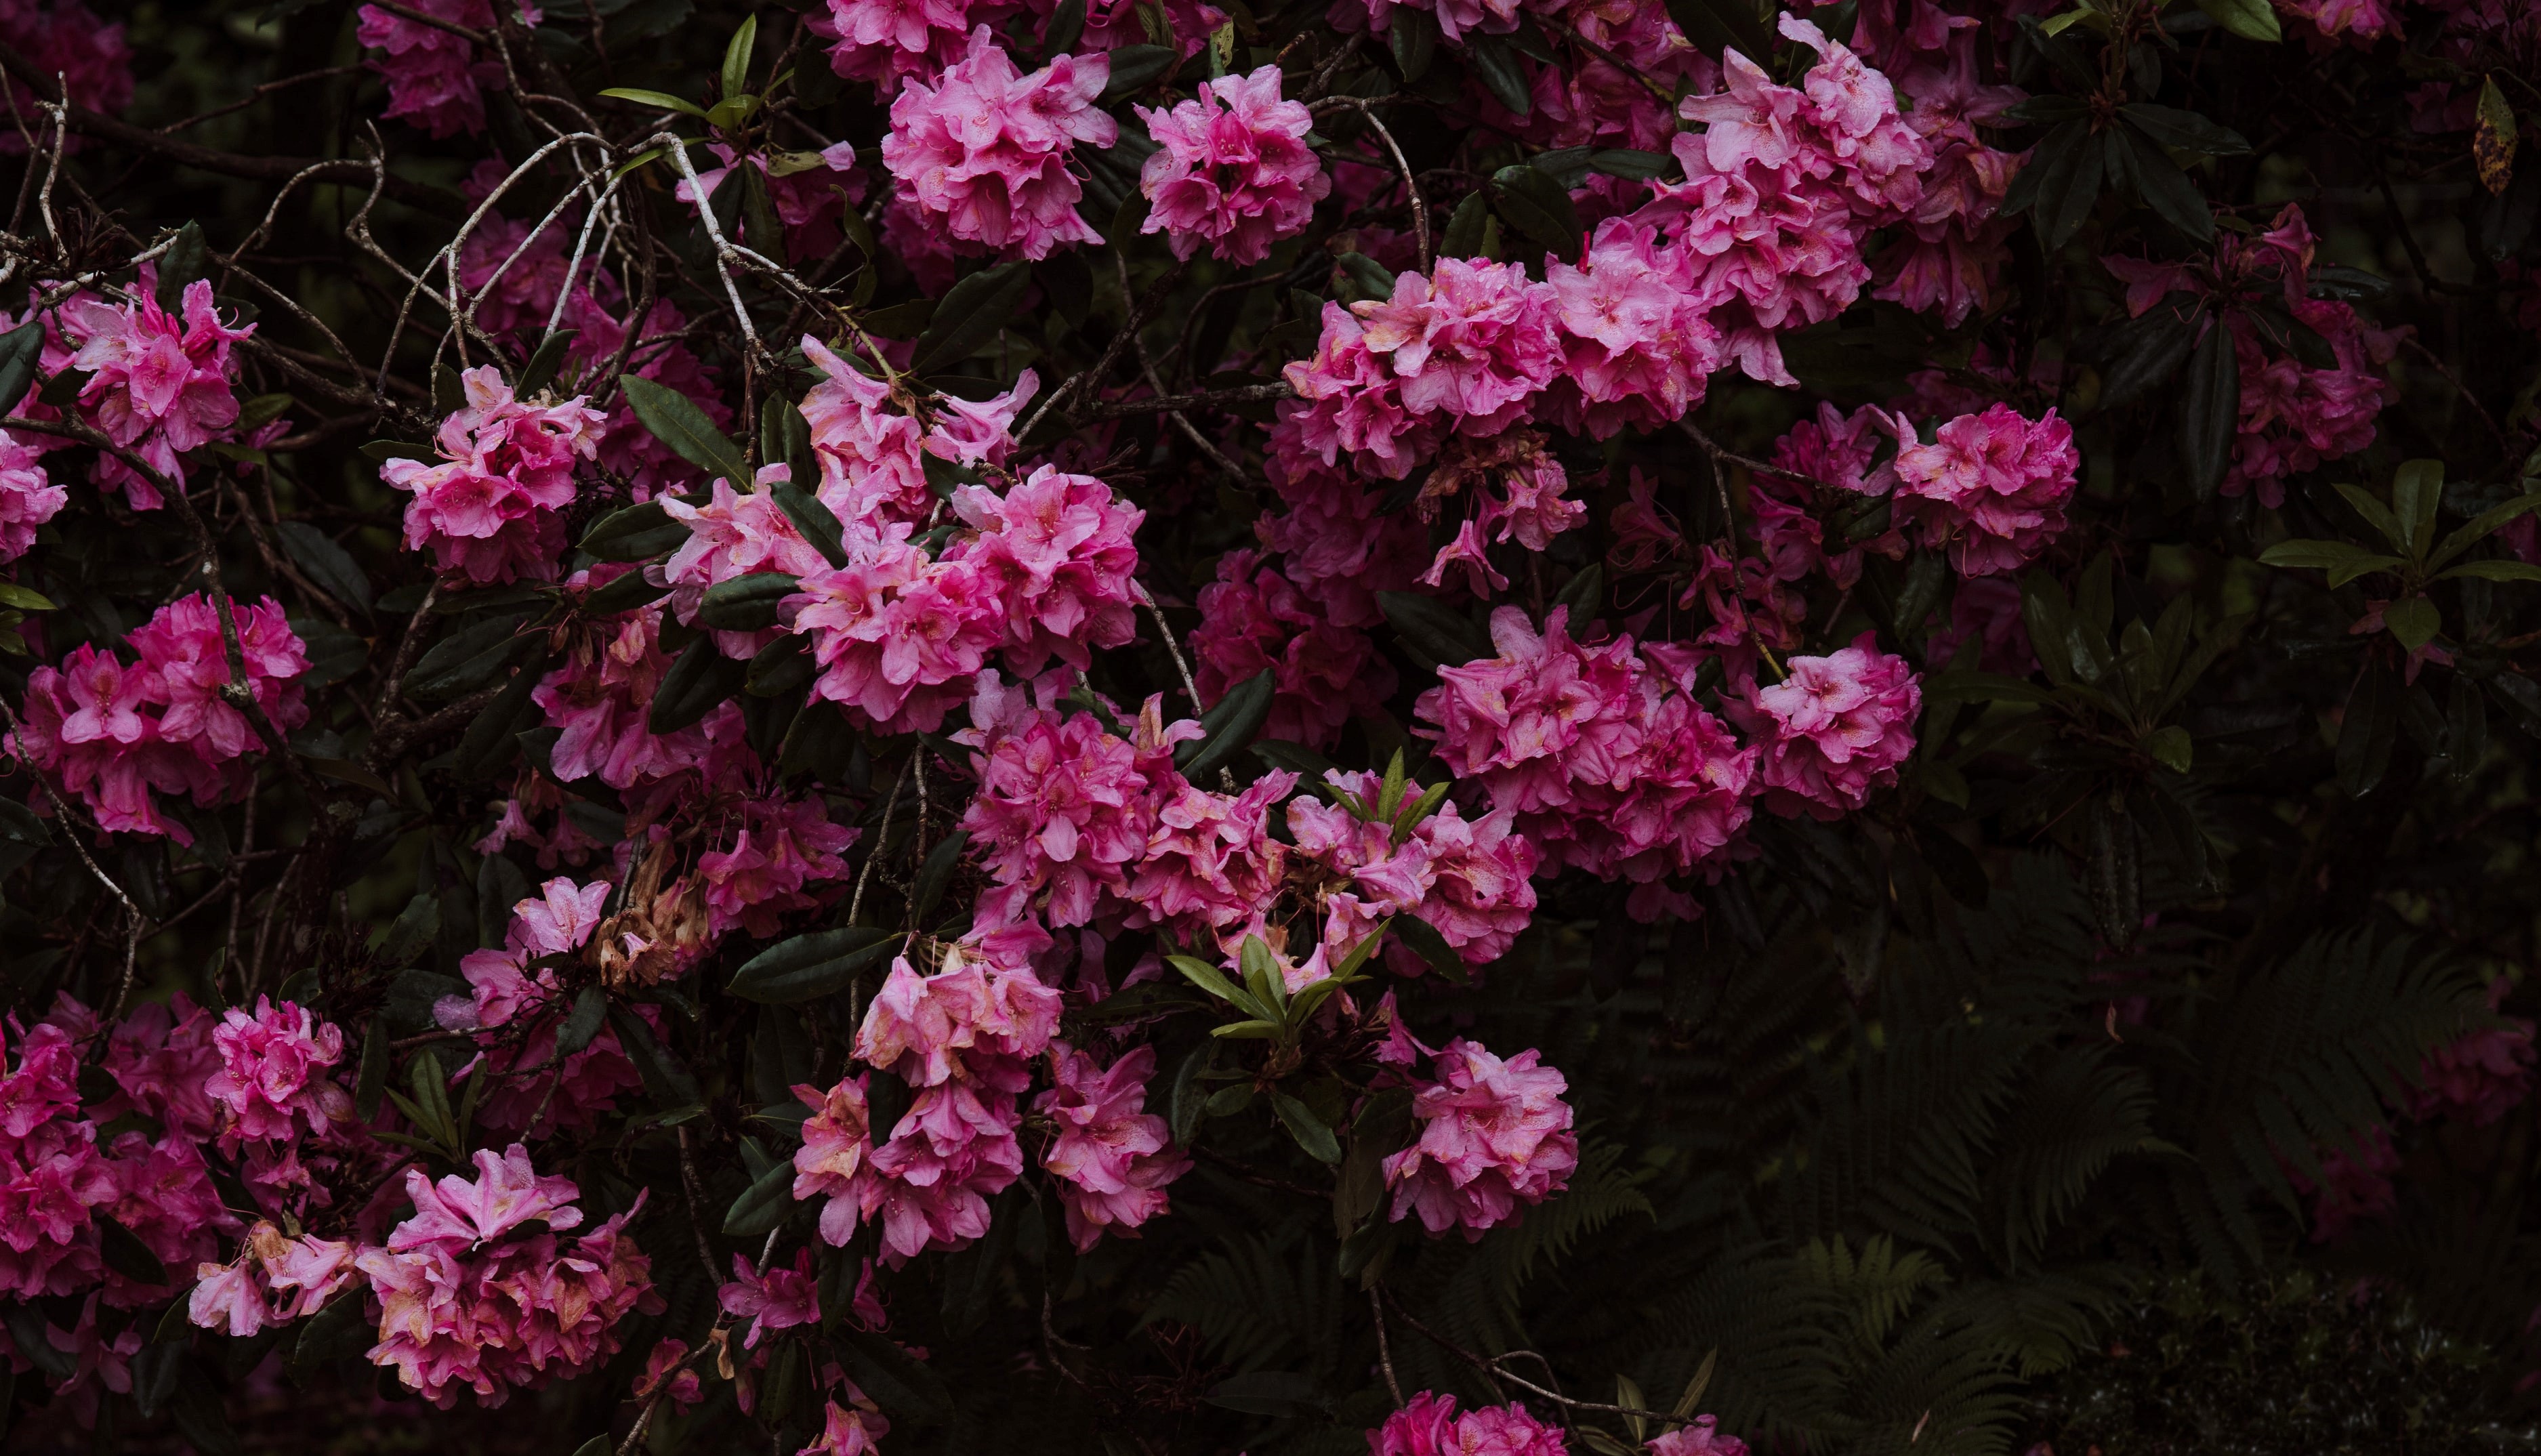 Rhododendronbed i Botanisk Have er reddet. Foto: Annie Spratt